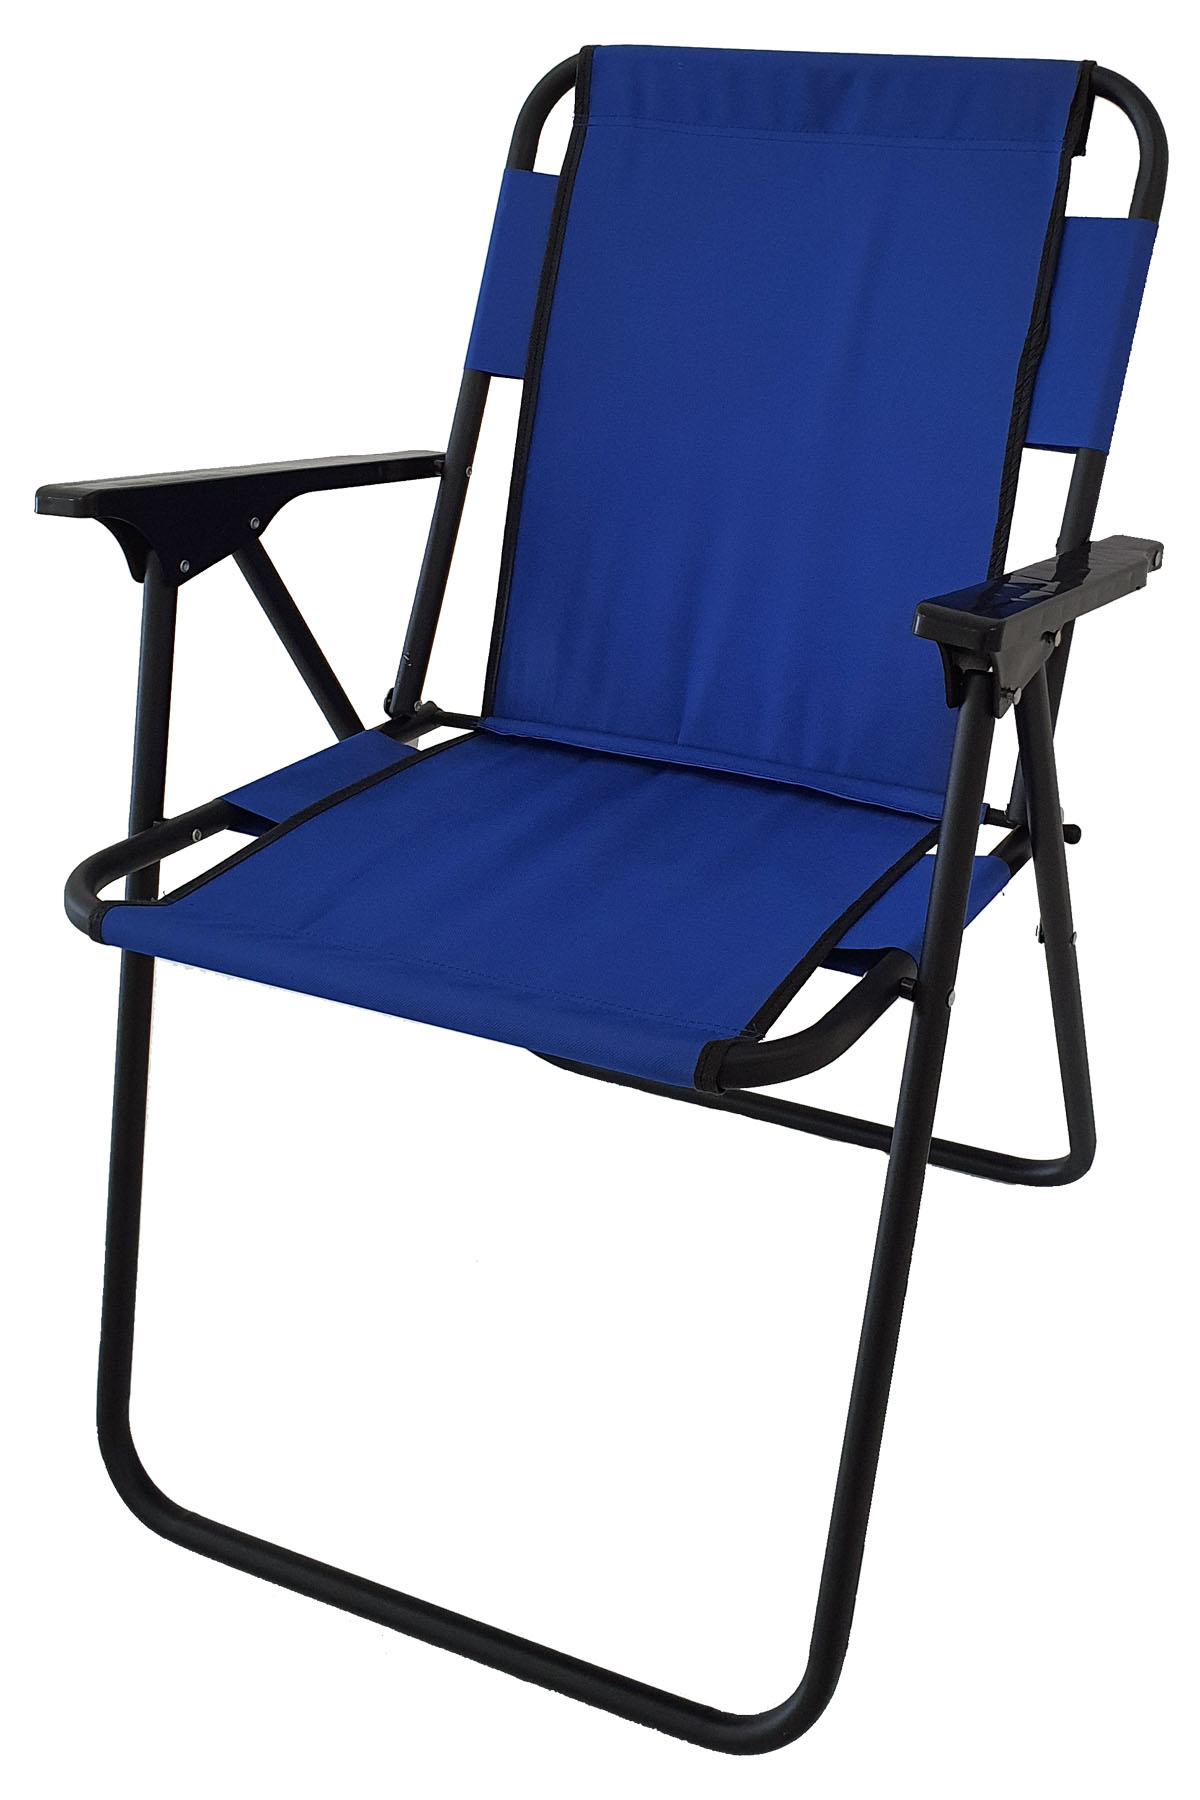 Bofigo Camping Chair Folding Chair Picnic Chair Beach Chair Blue